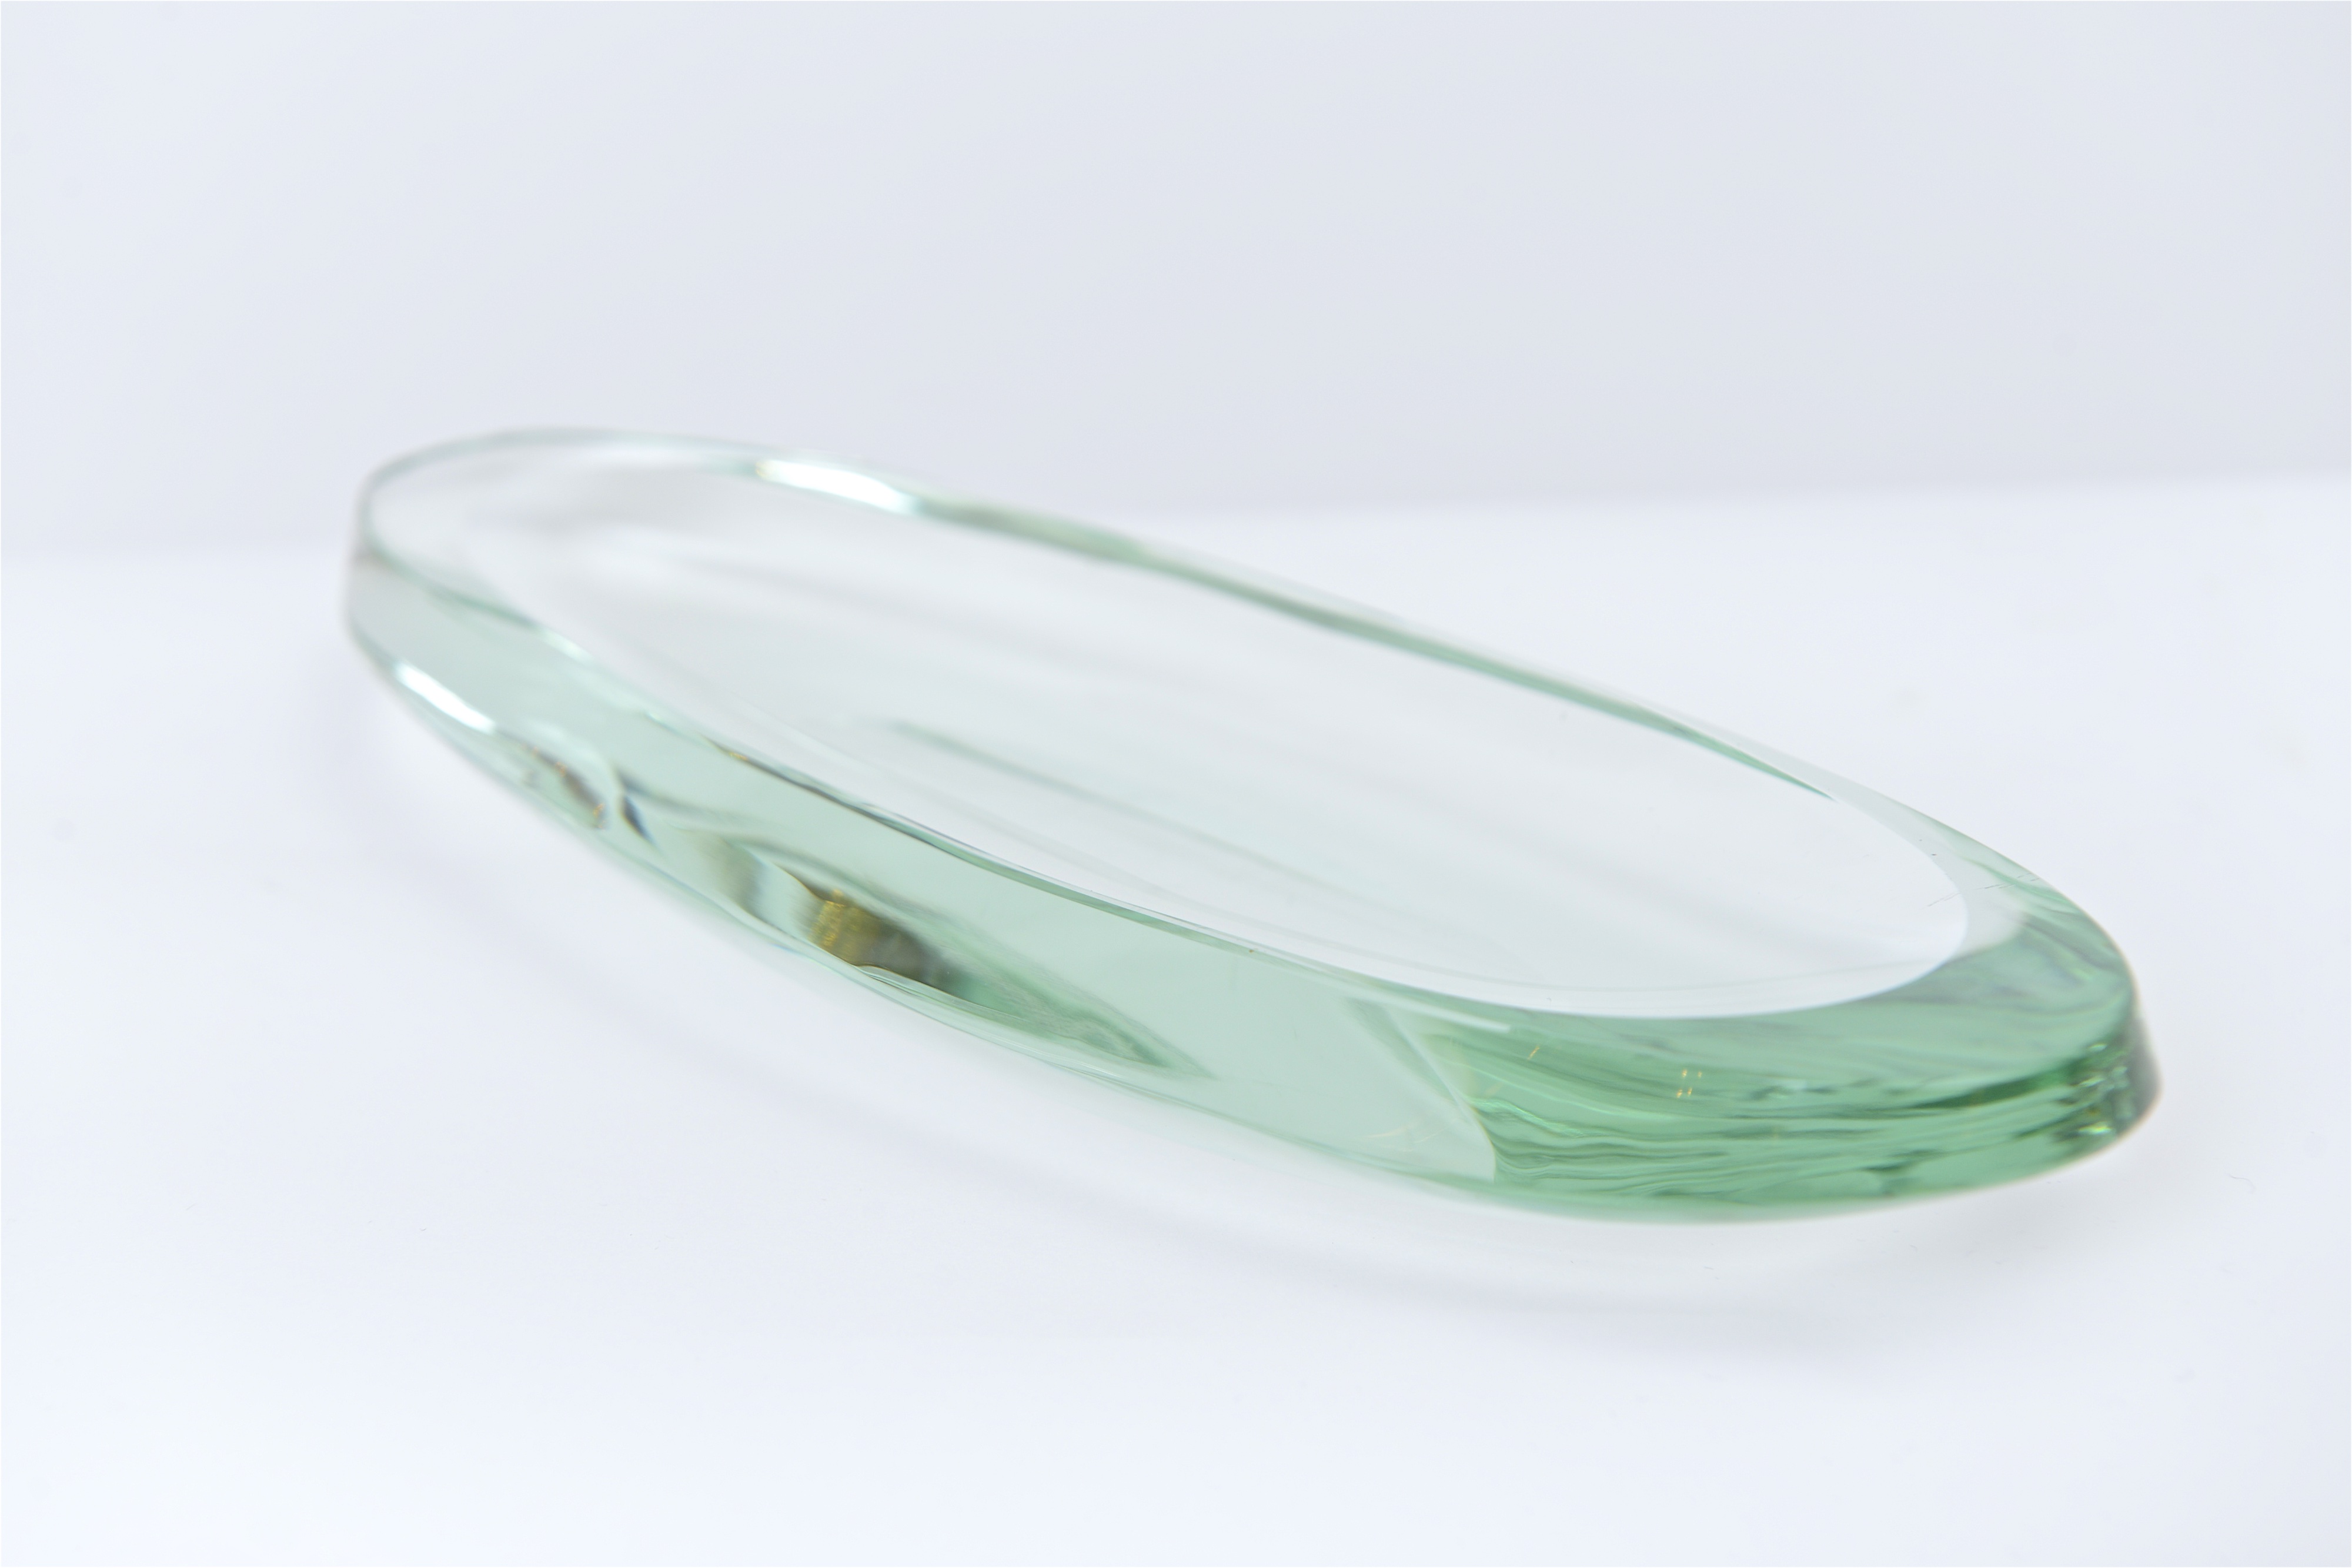 Aquamarine oval glass dish by Fontana Arte